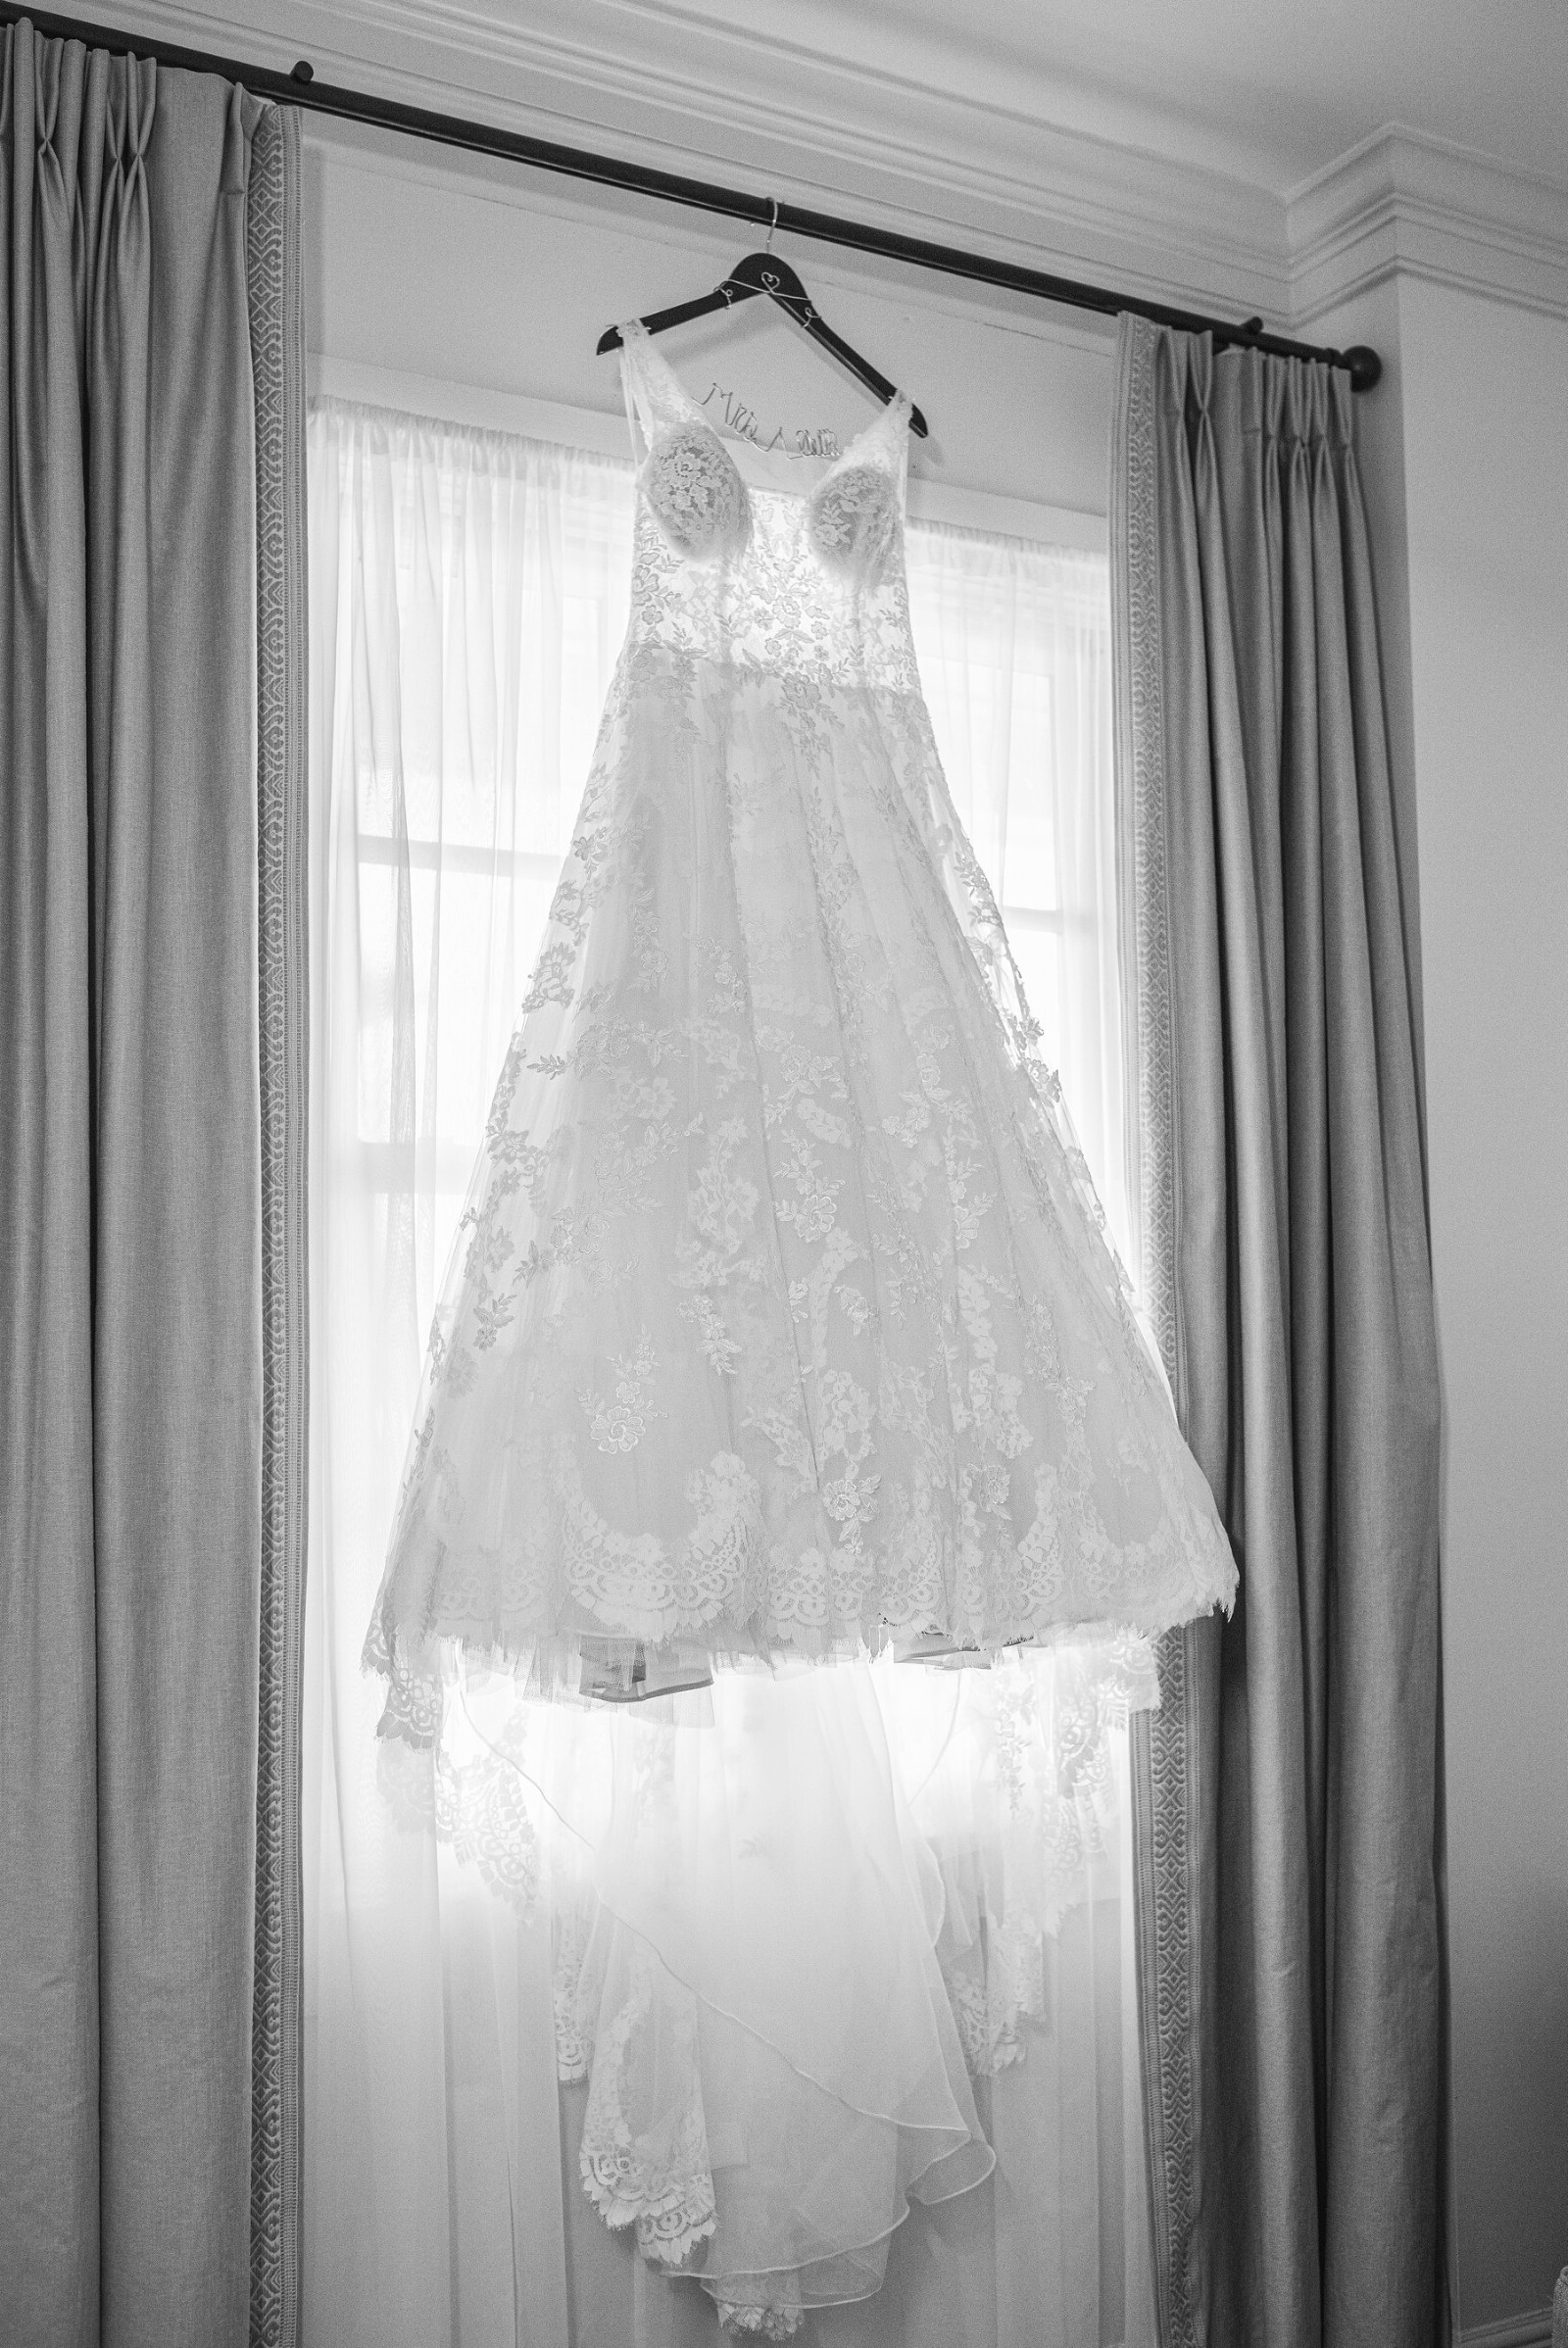 CEDAR ROOM WEDDING - PRISCILLA THOMAS PHOTOGRAPHY